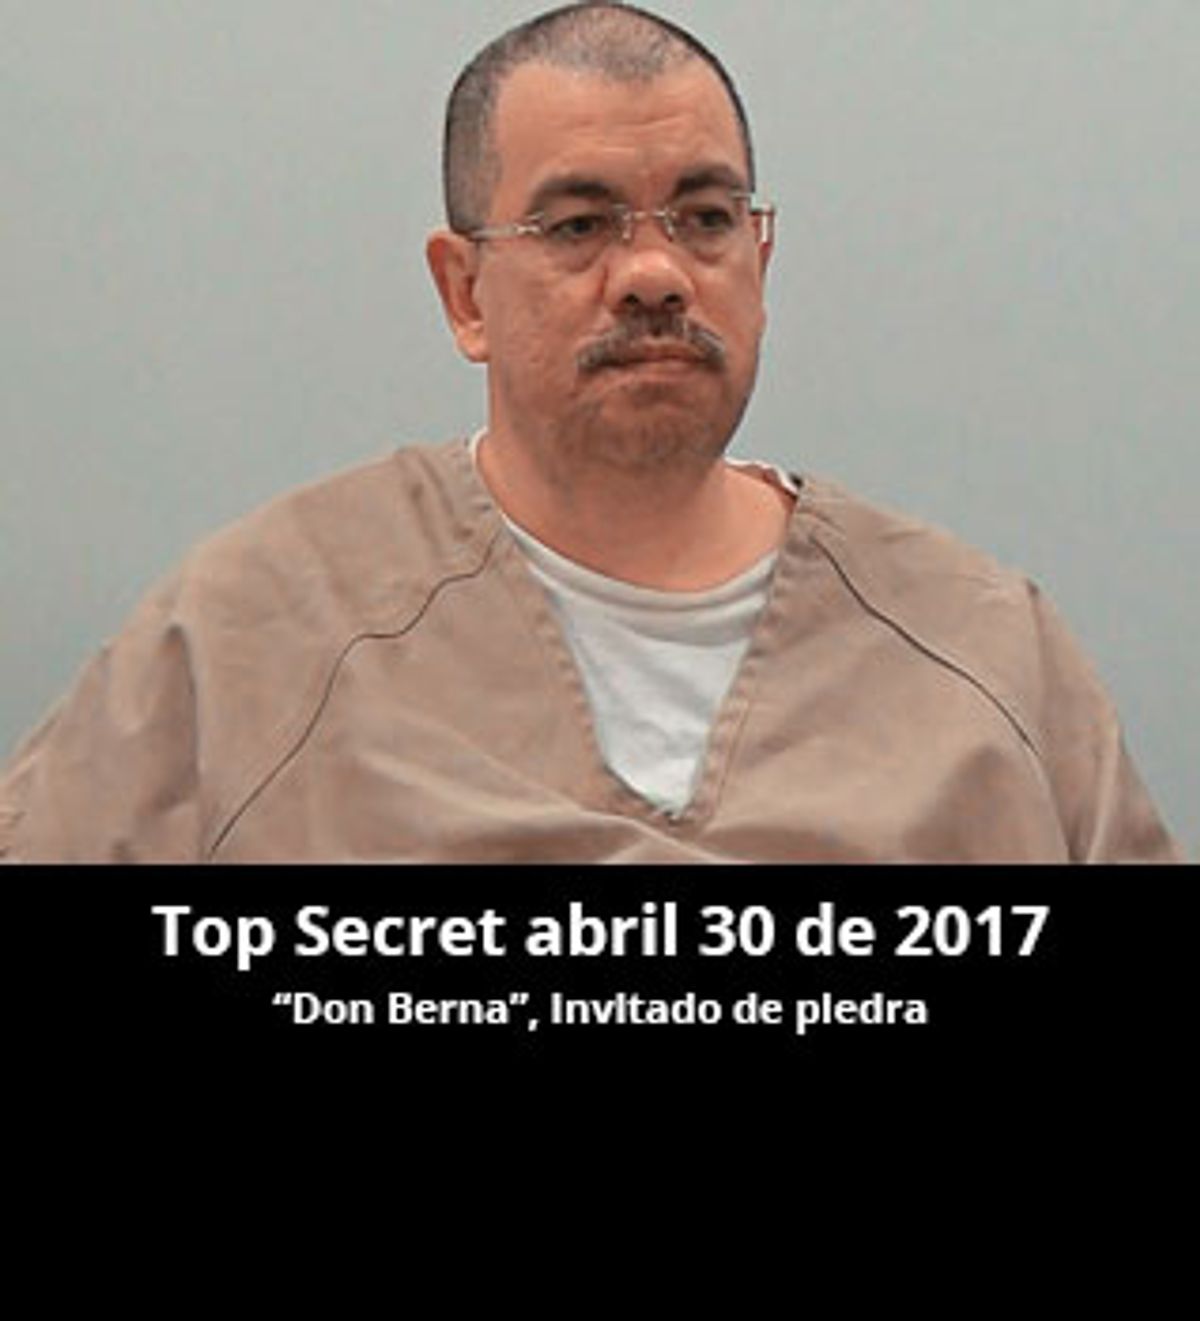 Top Secret abril 30 de 2017